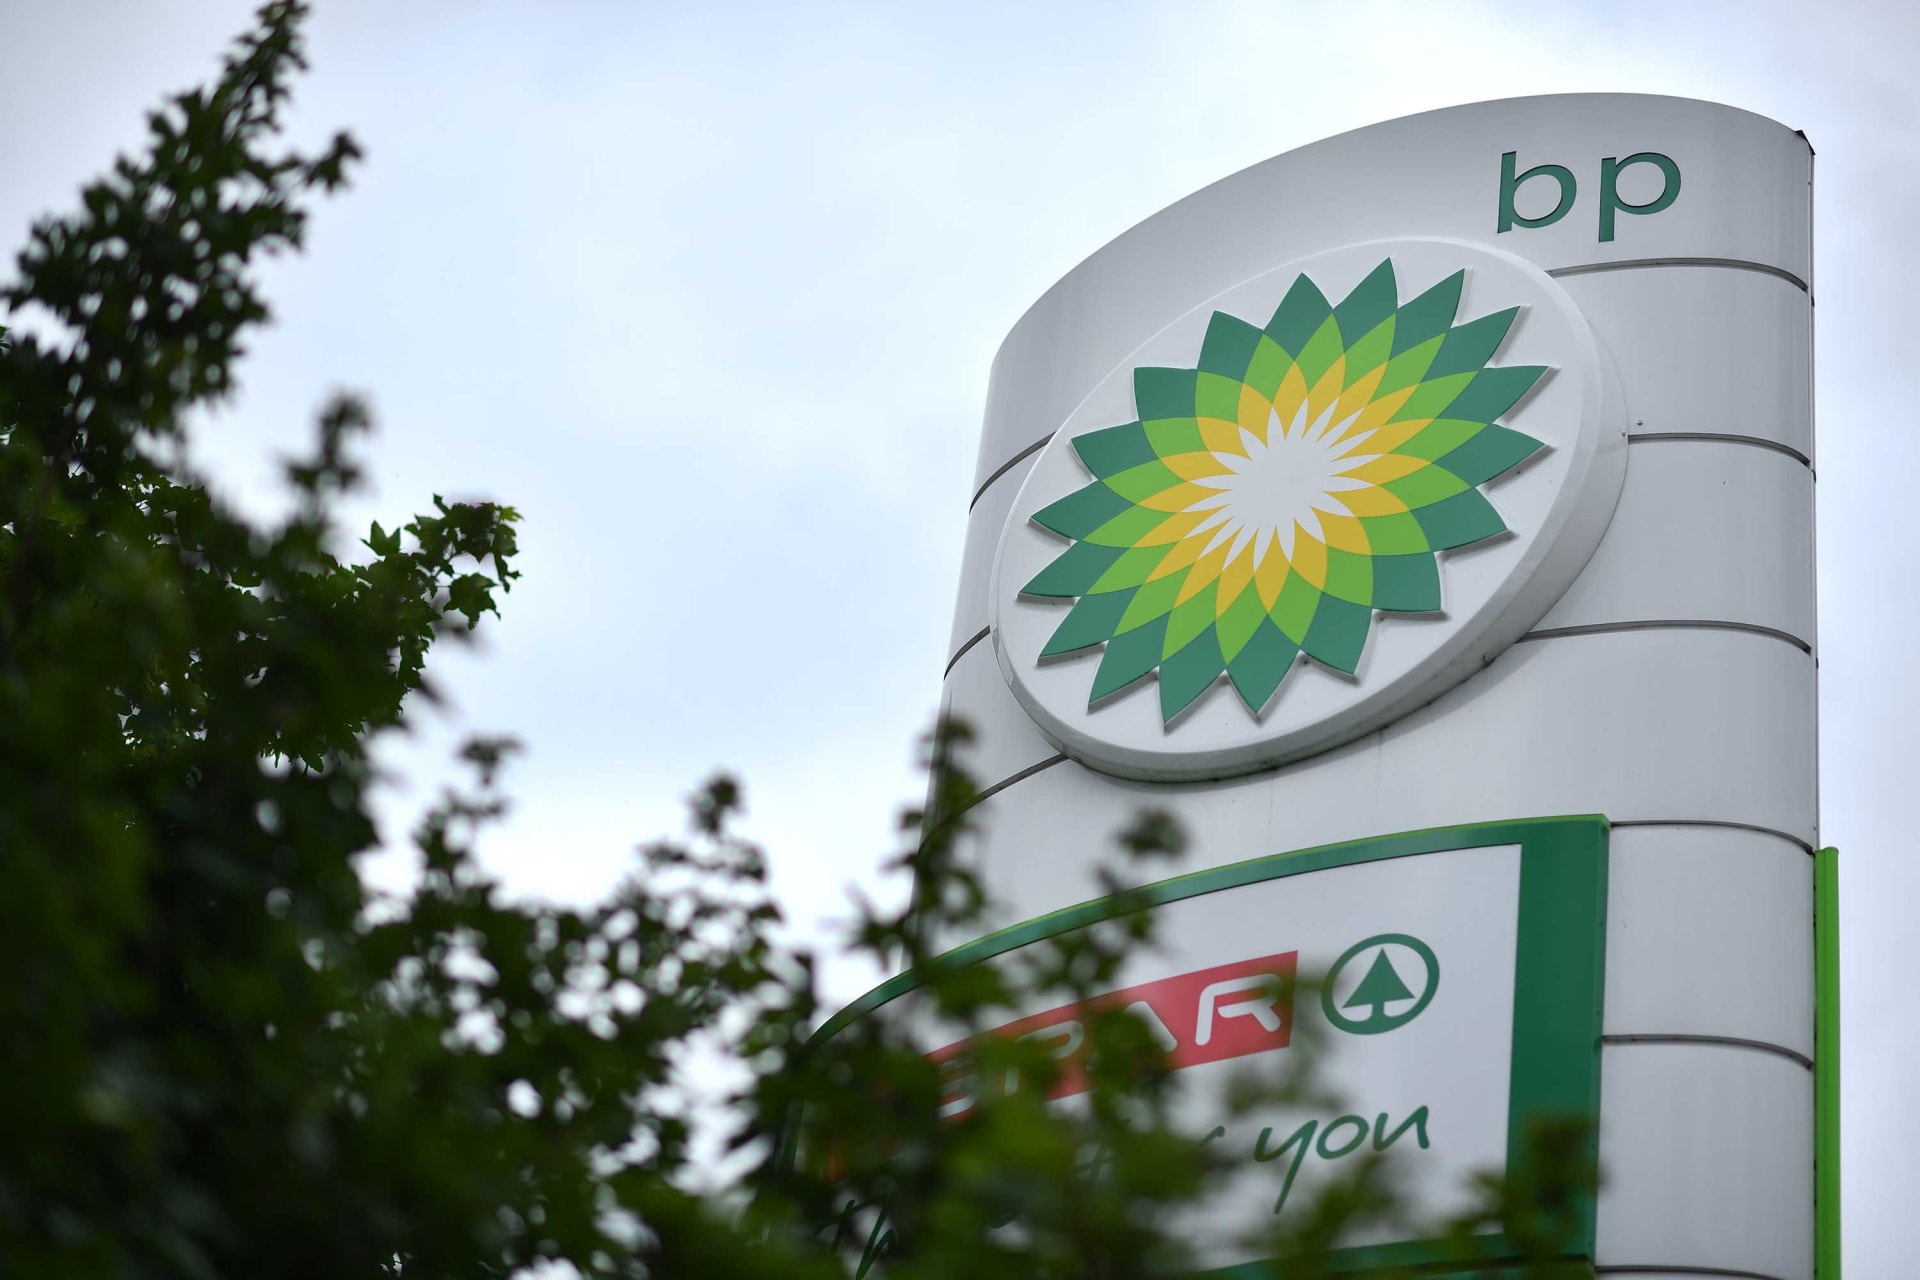 BP ستخفض إنتاج النفط بنسبة 40٪.. وتضخ مليارات الدولارات في الطاقة النظيفة